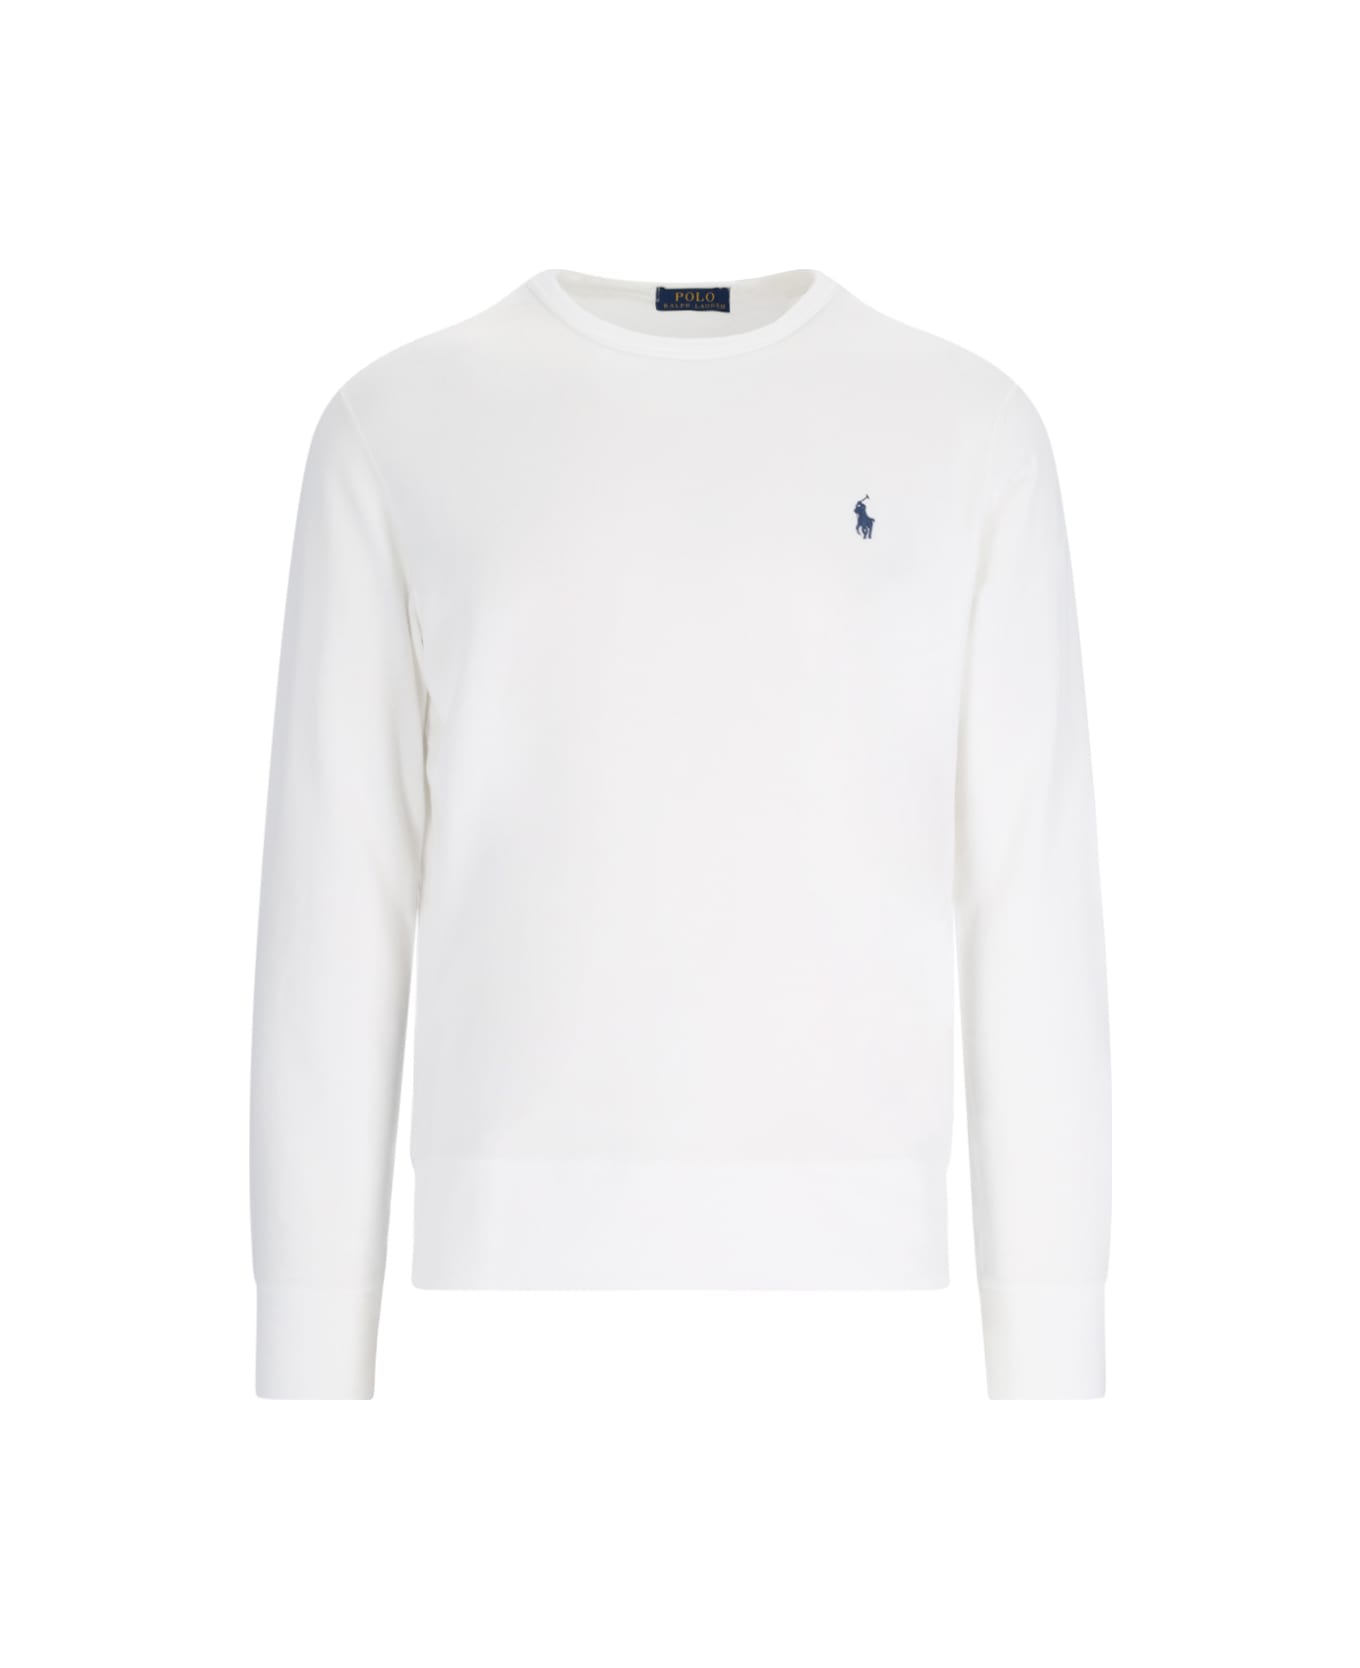 Polo Ralph Lauren Long Sleeve Cotton T-shirt - White フリース